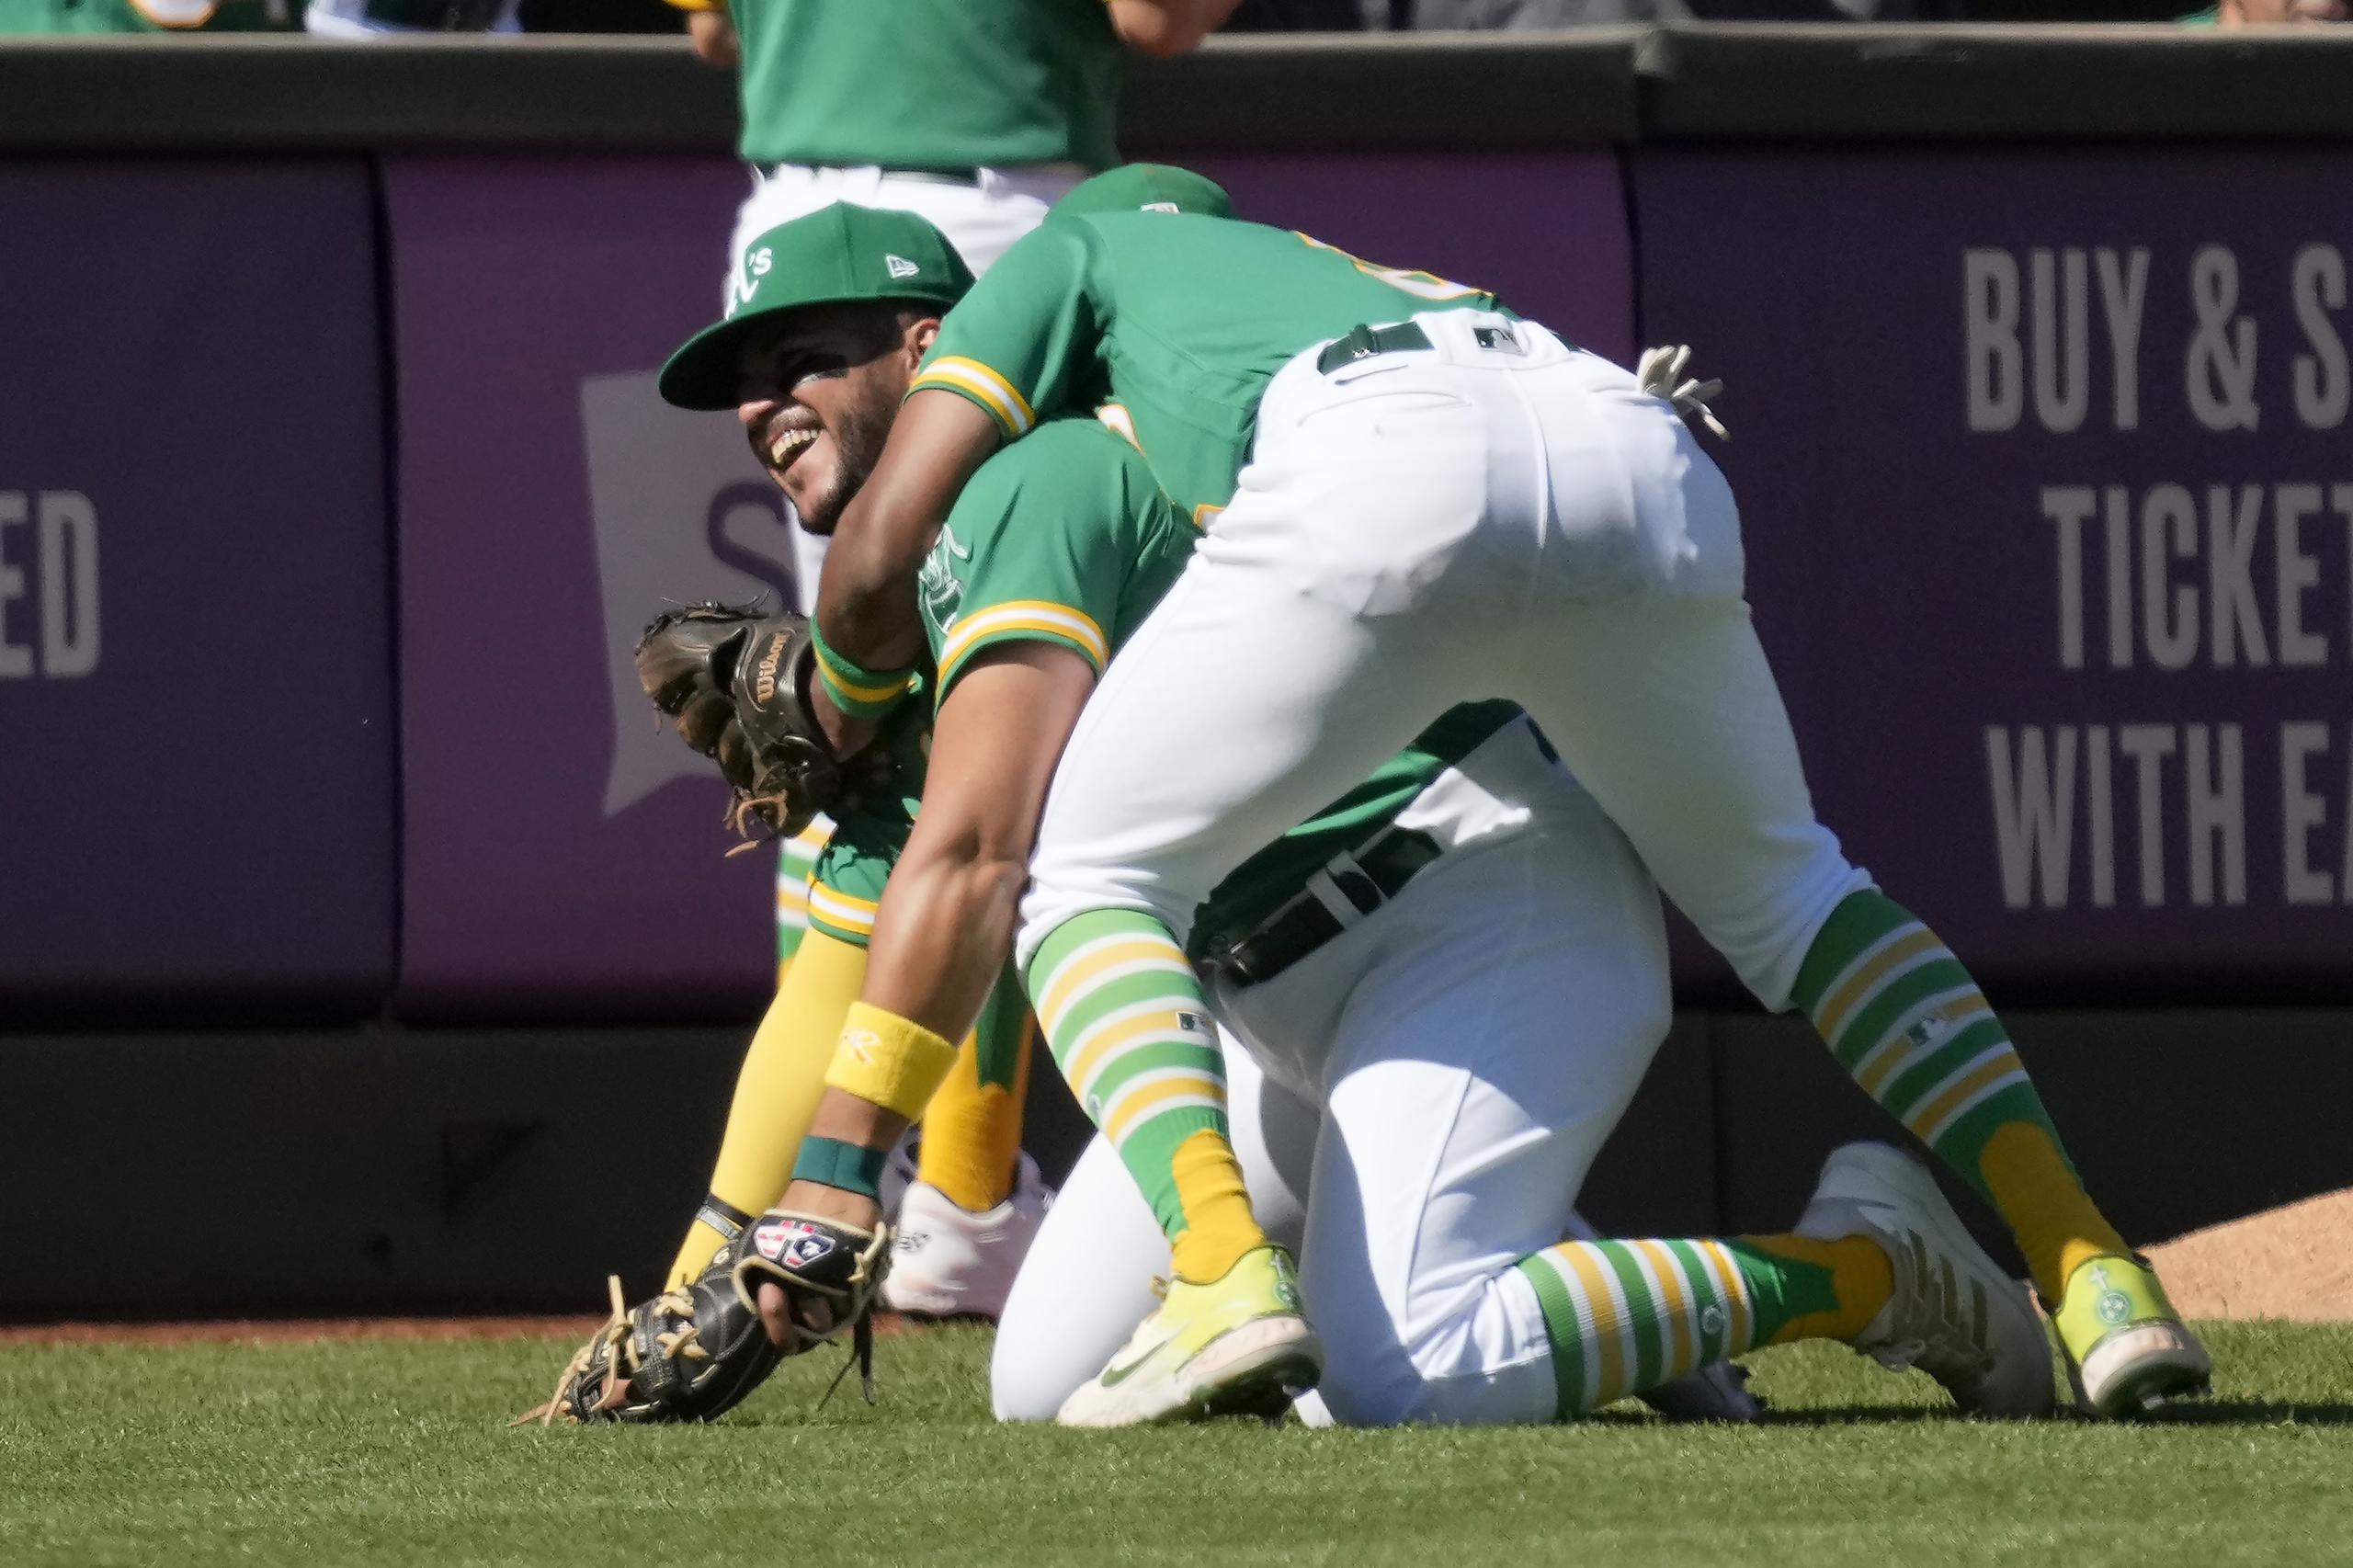 El antesalista puertorriqueño de los Athletics de Oakland, Vimael Machín, sonríe al ser abrazado por su compañero Tony Kemp luego de atrapar un batazo de foul de Eduardo Escobar, de los Mets de Nueva York.